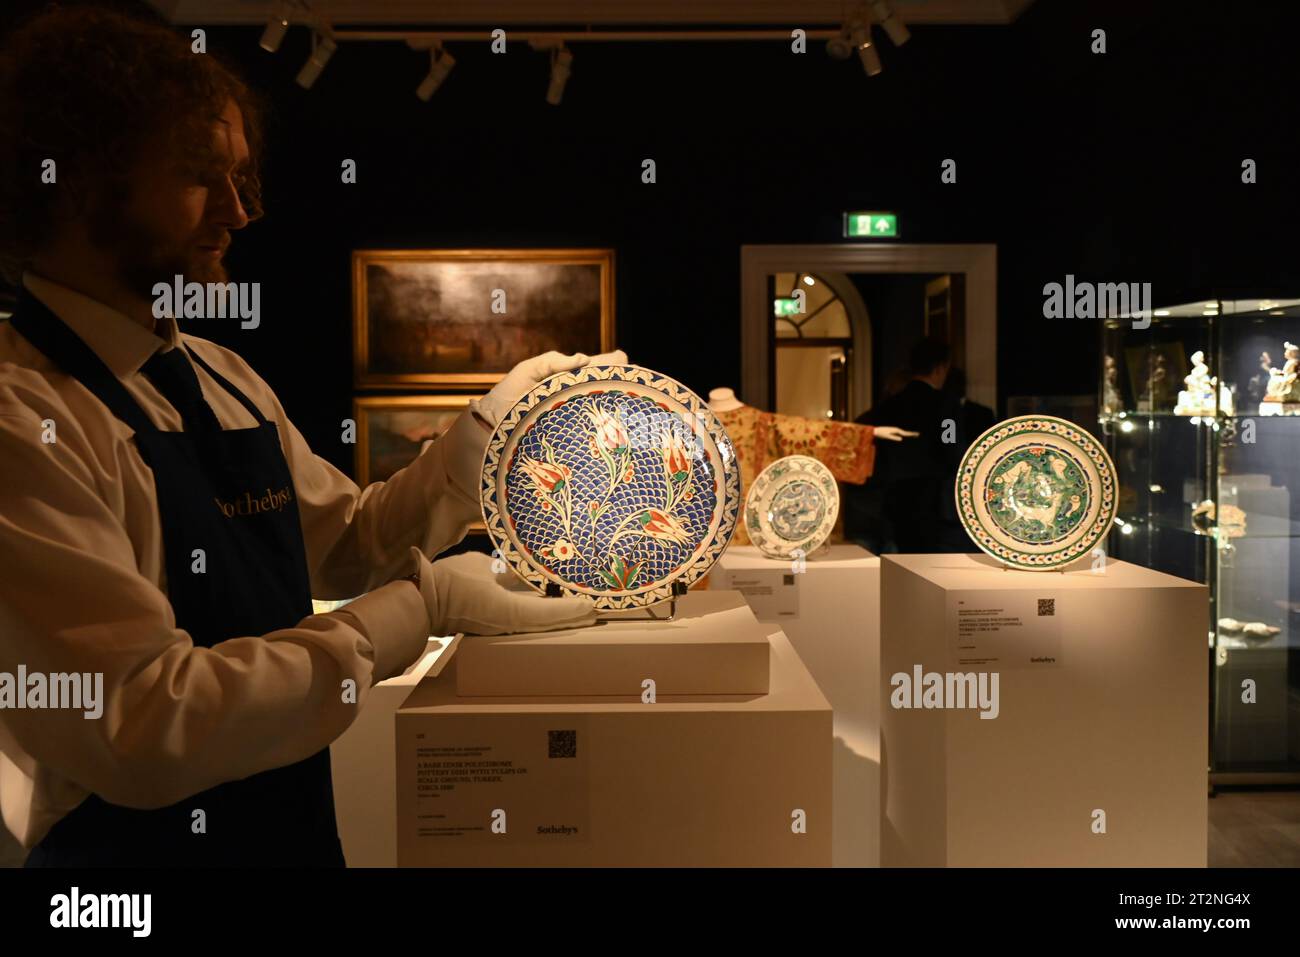 Le plus rare Astrolabe à apparaître aux enchères, vers 900 AD (estimation : £1 500 000-2 500 000) un exquis bol en verre doré et émaillé mamelouk du 14e siècle (estimation : £600,000-800,000) a Grey Pelican from the Impey Album, jadis conservé dans la collection de Jackie Kennedy (estimation : £120,000-180,000) trois peintures ottomanes majeures, dont un portrait du sultan Mehmet II datant du 17e siècle (estimation : 80 000 à 120 000 £) À CÔTÉ art arabe, turc et indien moderne et contemporain, y compris les toiles séminales de Fahrelnissa Zeid, Huguette Caland, Bhupen Khakhar & Manjit Bawa Banque D'Images